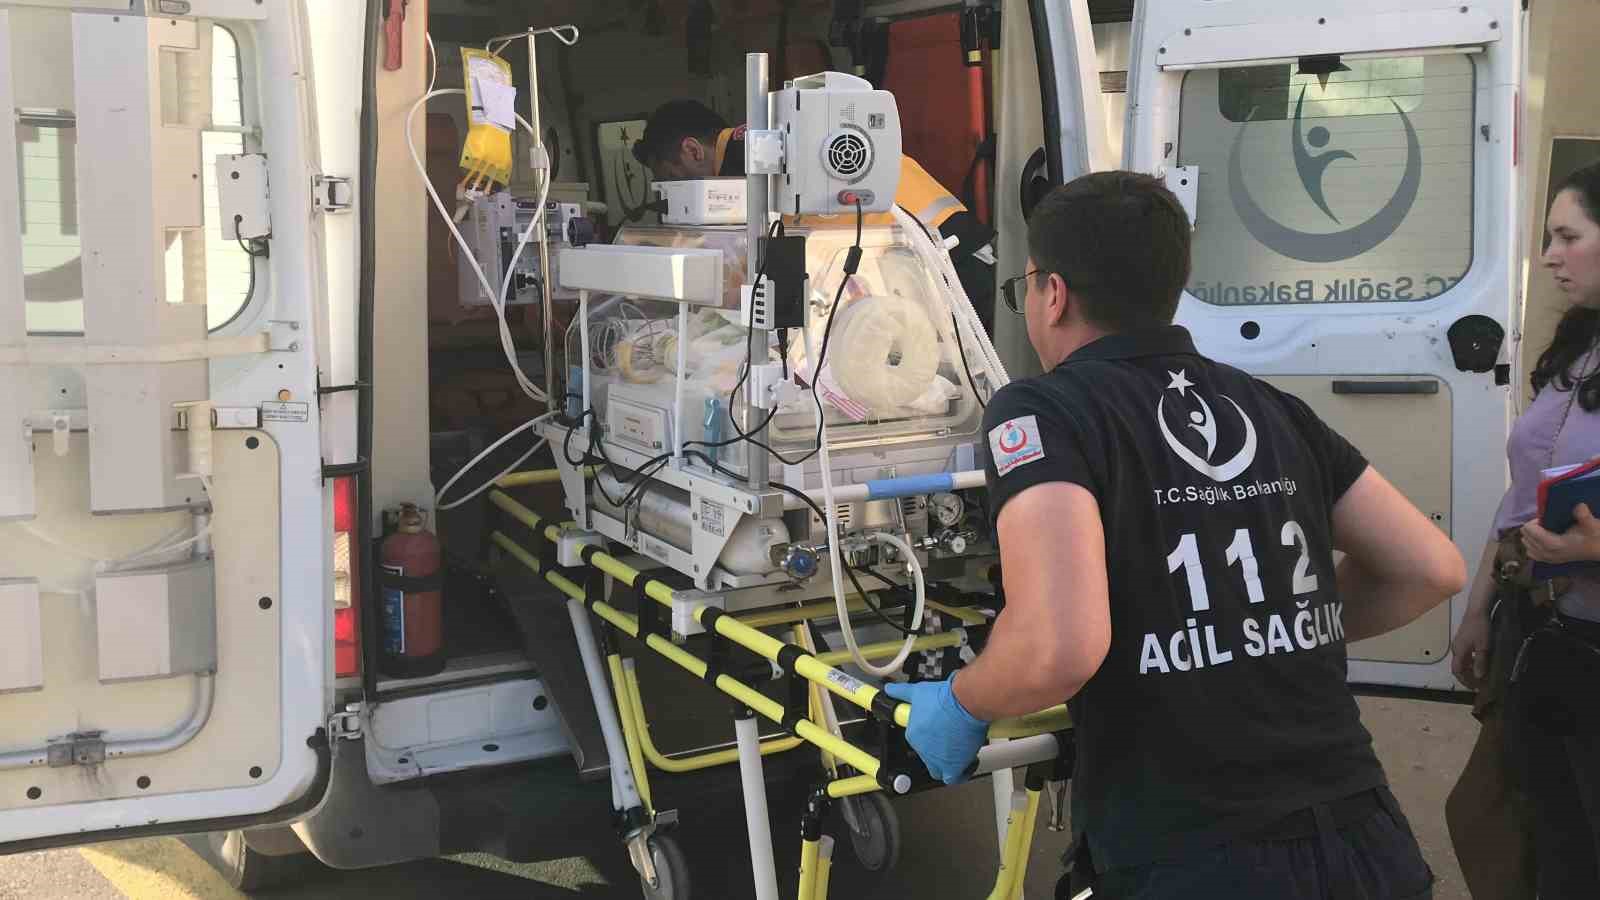 Vali Sezerden Hastanedeki Yangına İlişkin Açıklama: Büyük Oranda Kontrol Sağlanmış Durumda